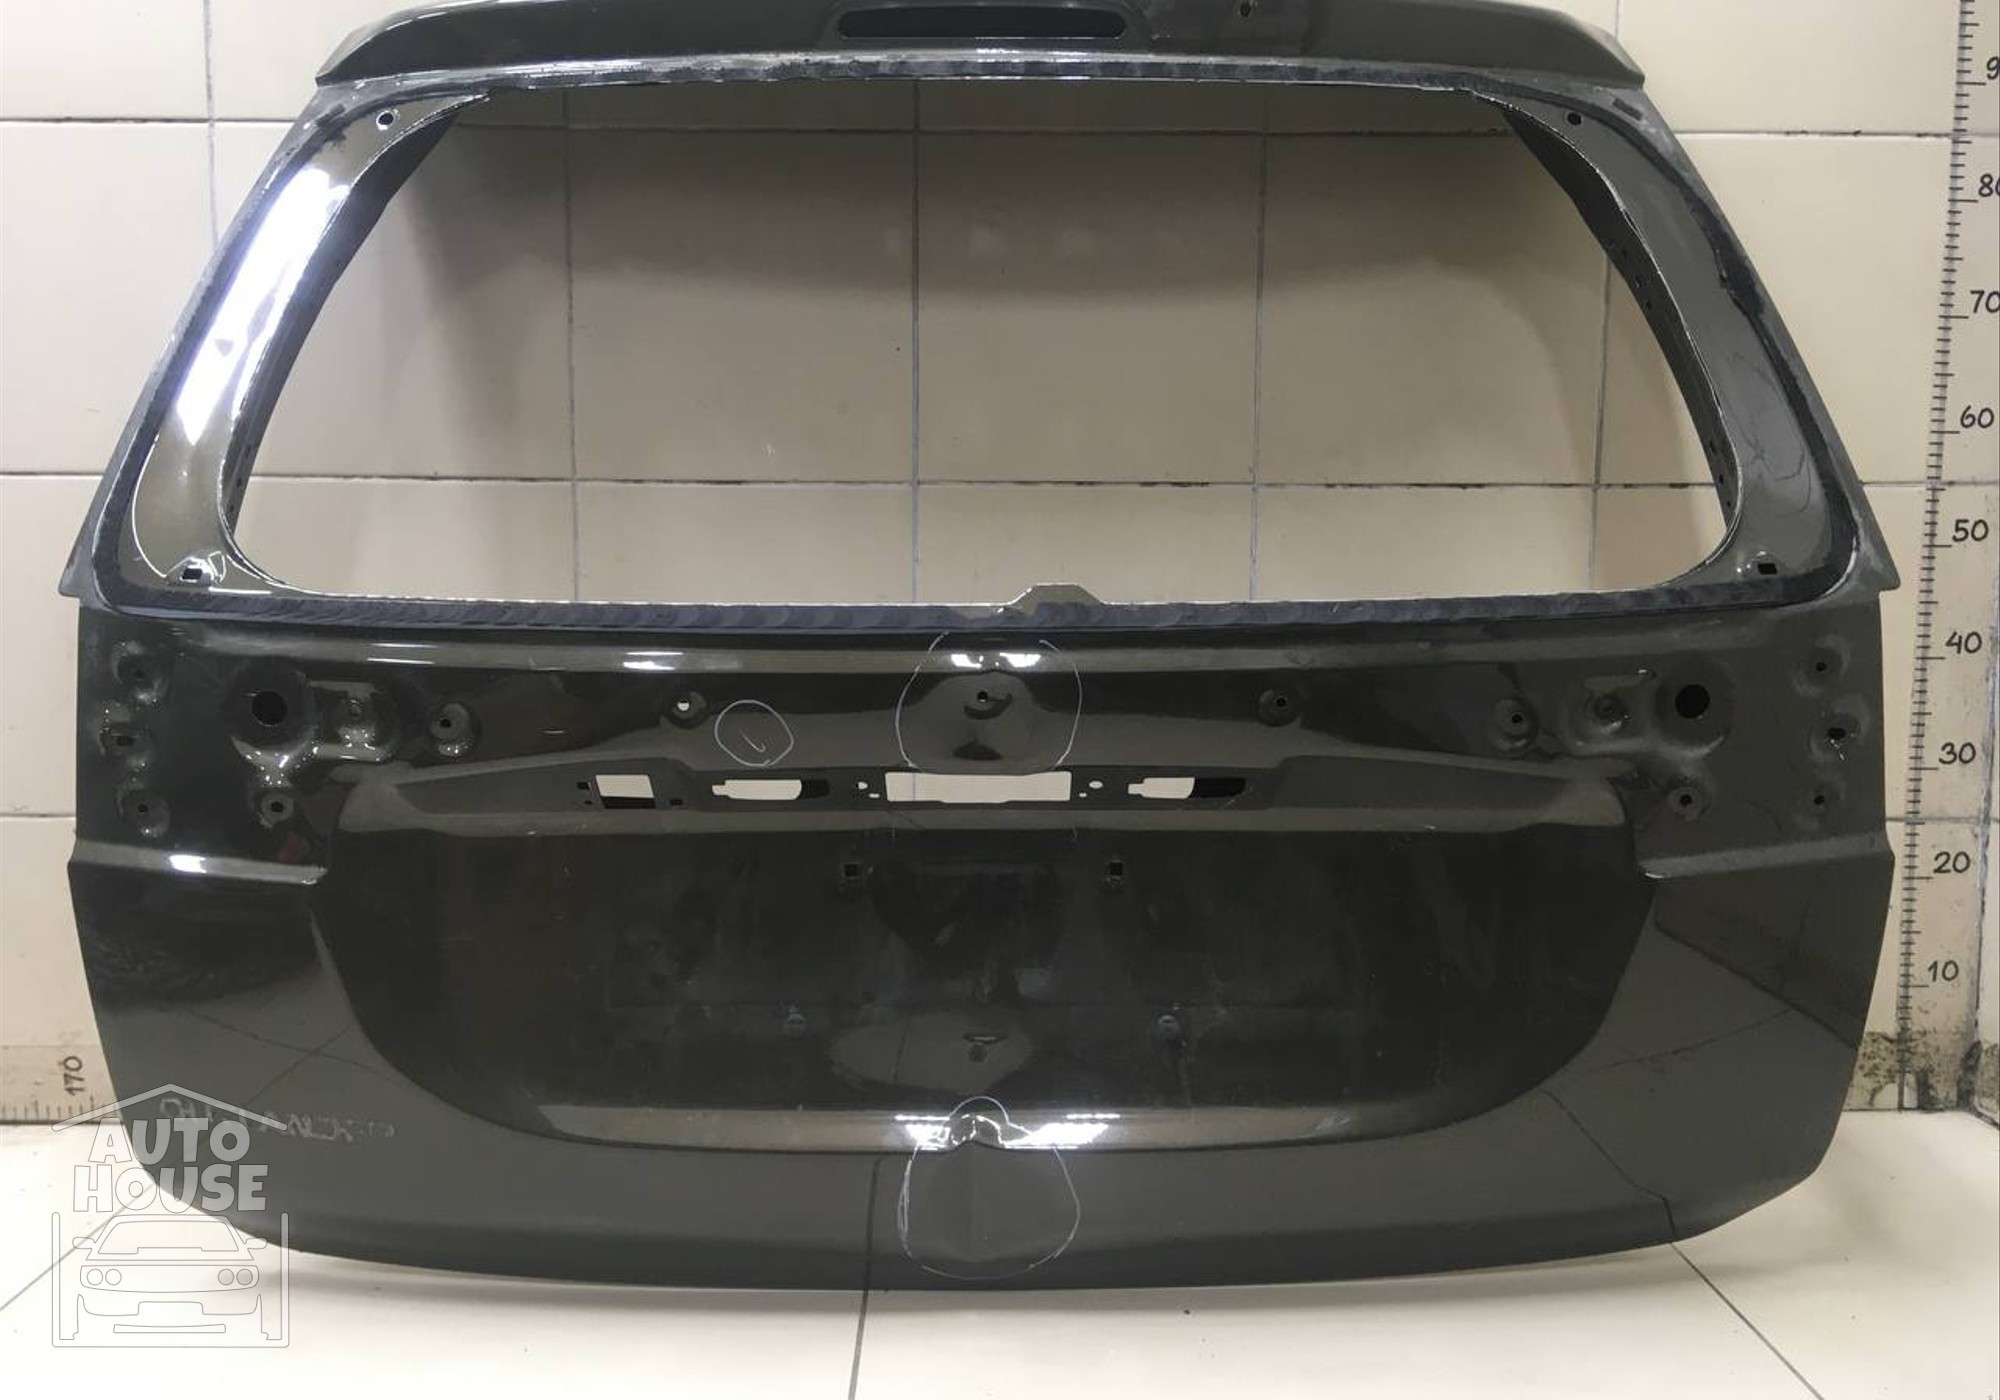 5R9B663 Дверь багажника (После 2015 года, Под камеру) для Mitsubishi Outlander III (с 2012)